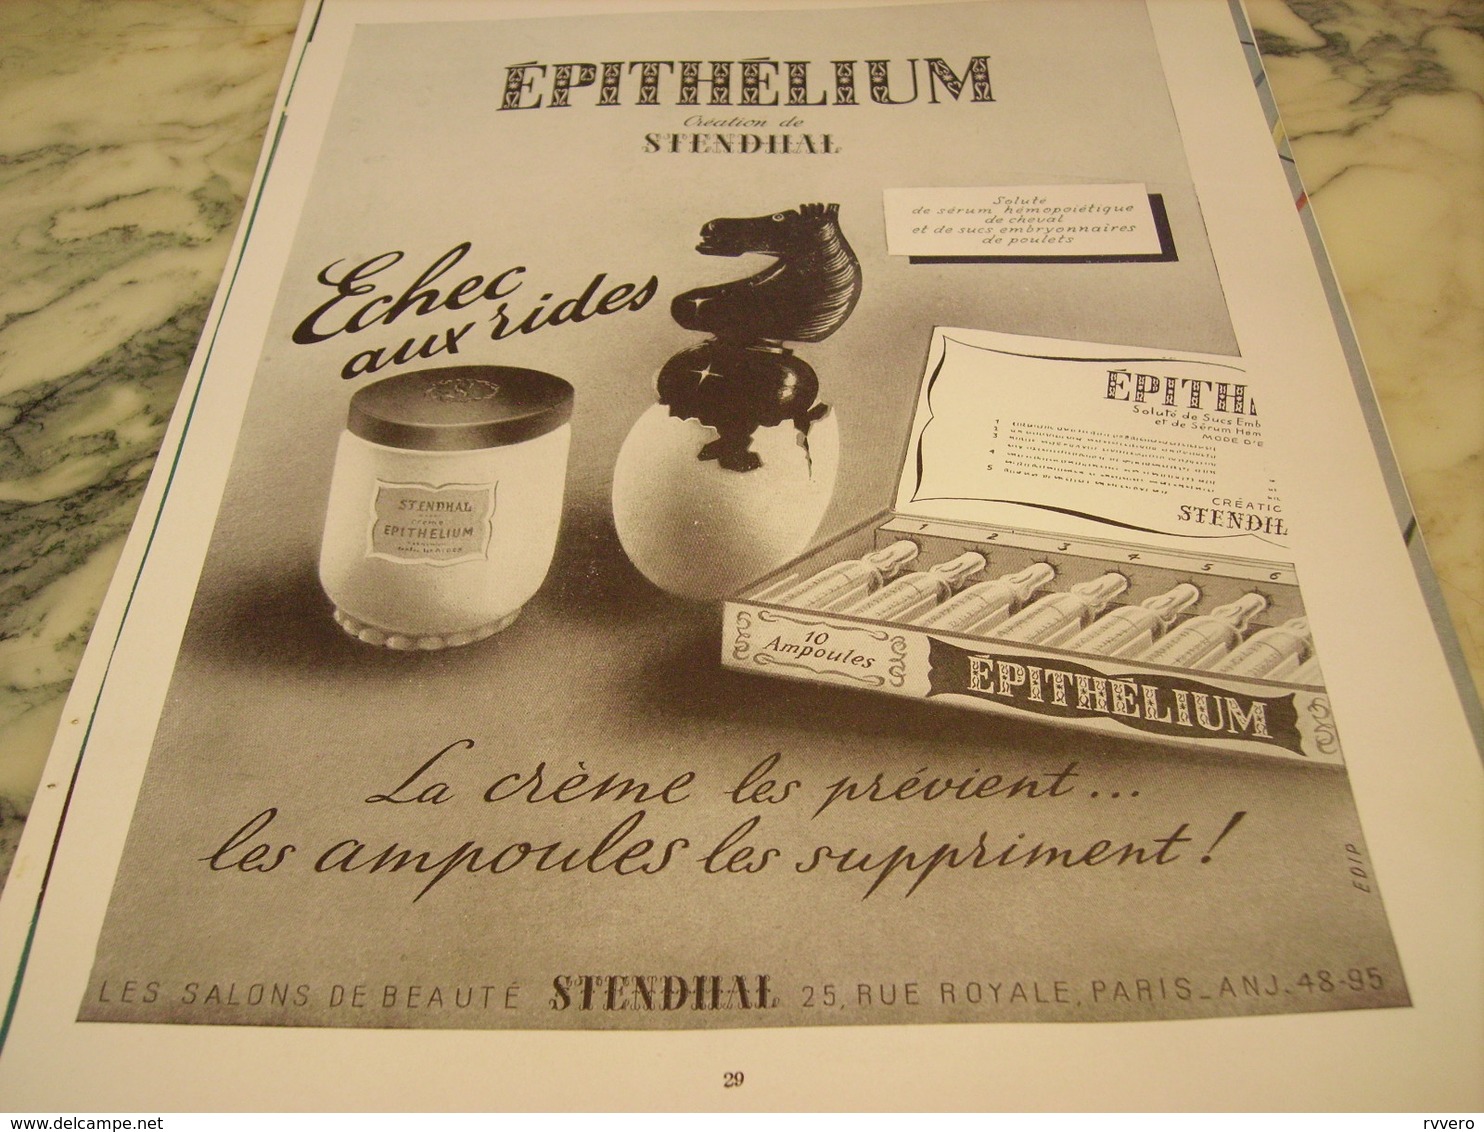 ANCIENNE PUBLICITE ECHEC AUX RIDE EPITHELIUM  CREME DE STENDILAL  1951 - Affiches